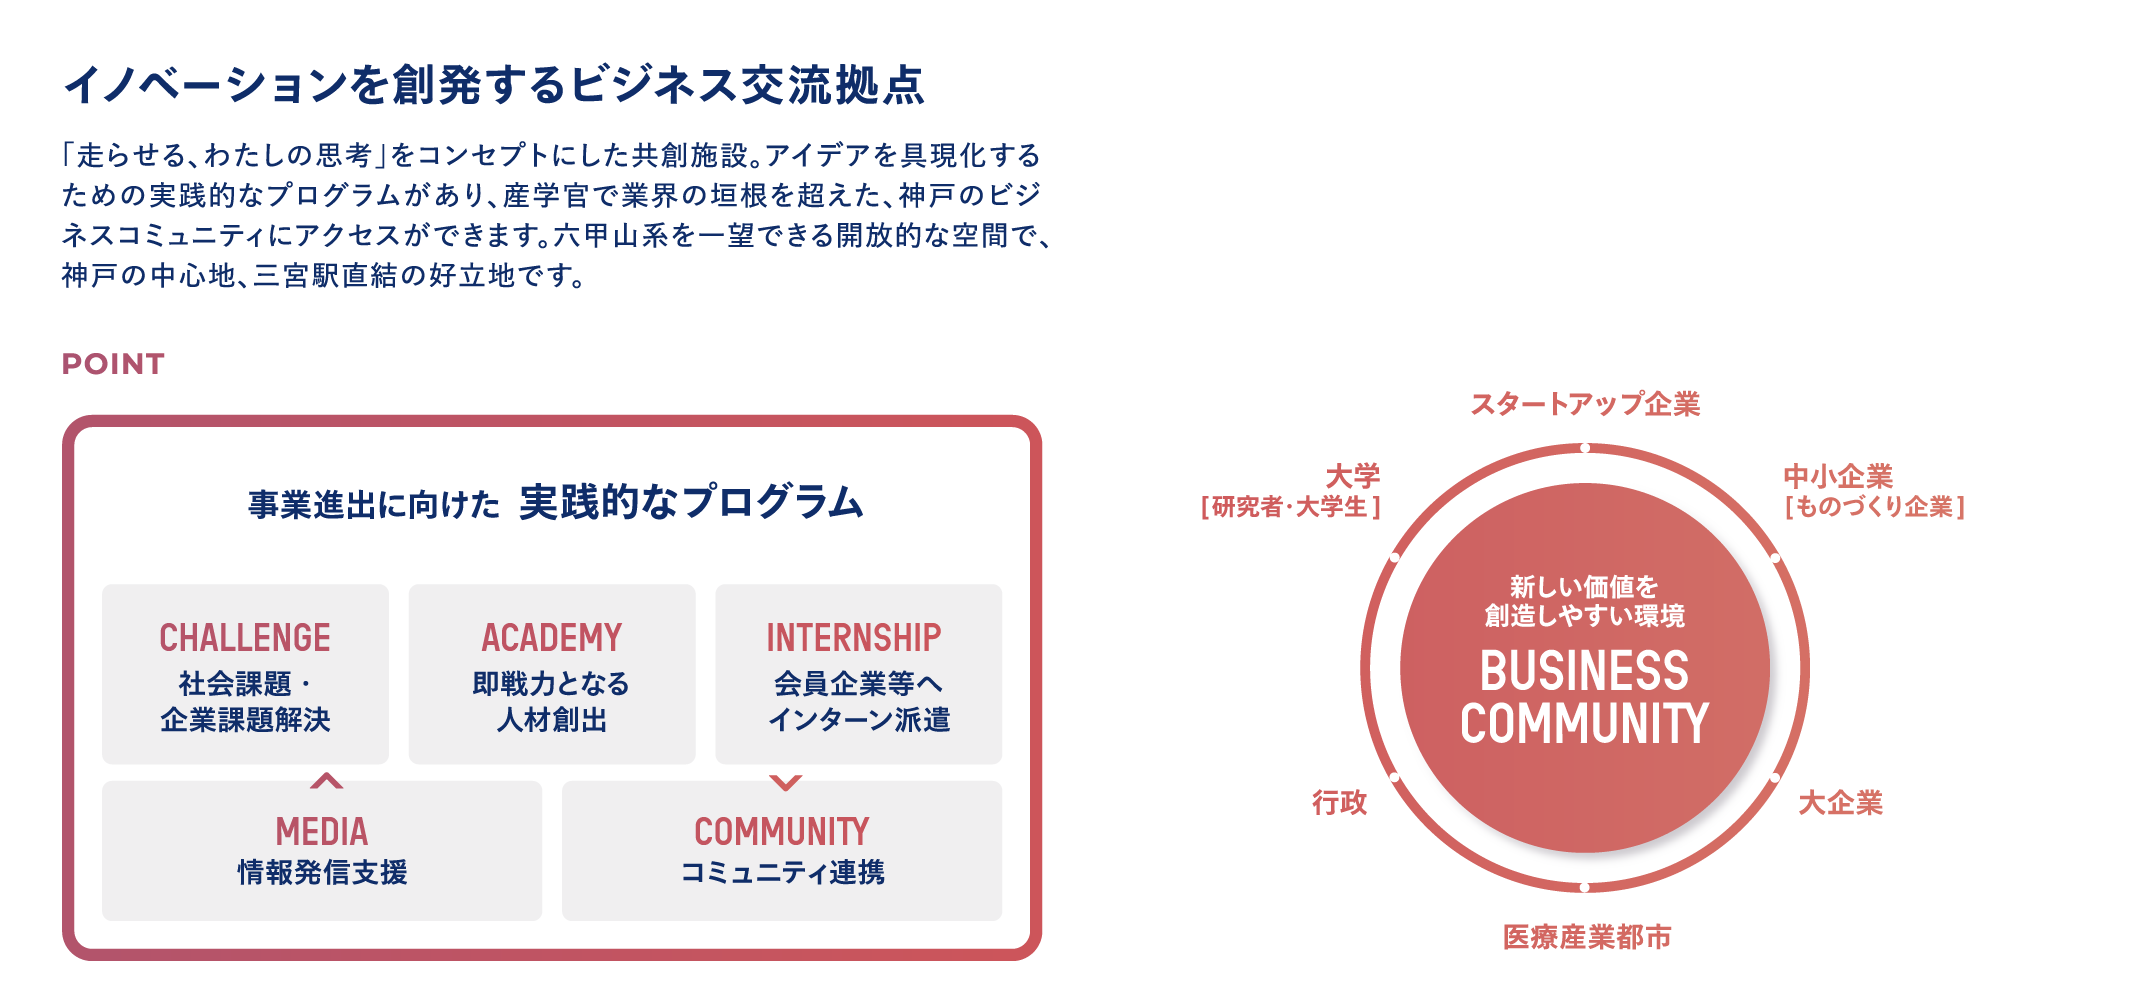 イノベーションを創発するビジネス交流拠点：「走らせる、わたしの思考」をコンセプトにした共創施設。アイデアを具現化するための実践的なプログラムがあり、産学官で業界の垣根を超えた、神戸のビジネスコミュニティにアクセスができます。六甲山系を一望できる開放的な空間で、神戸の中心地、三宮駅直結の好立地です。